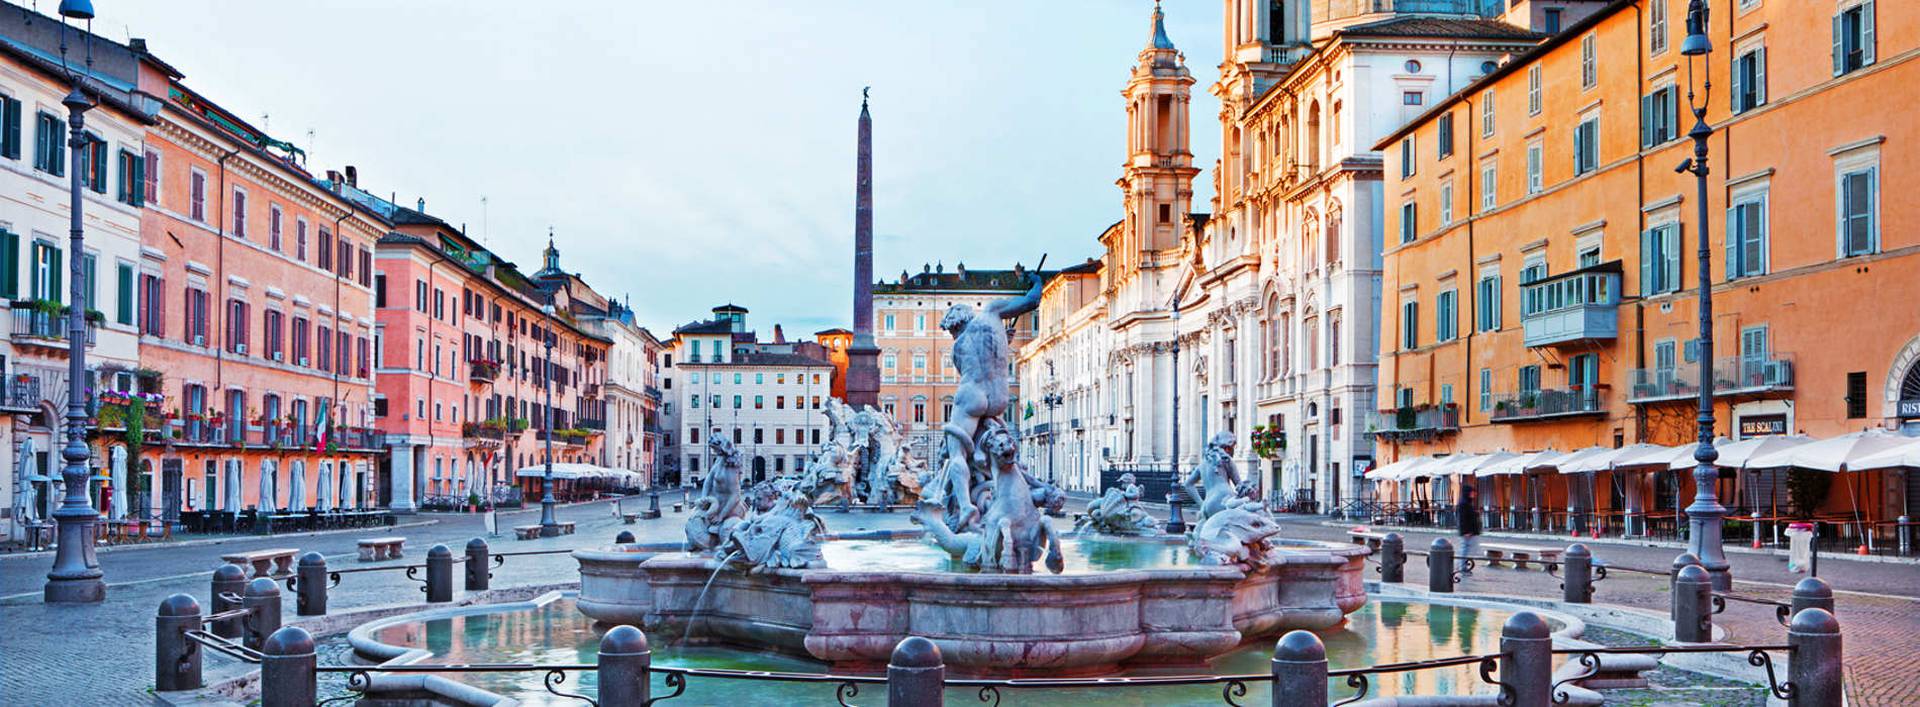 Profitez de Rome avec les Hôtels Leonardi Leonardi Hotels